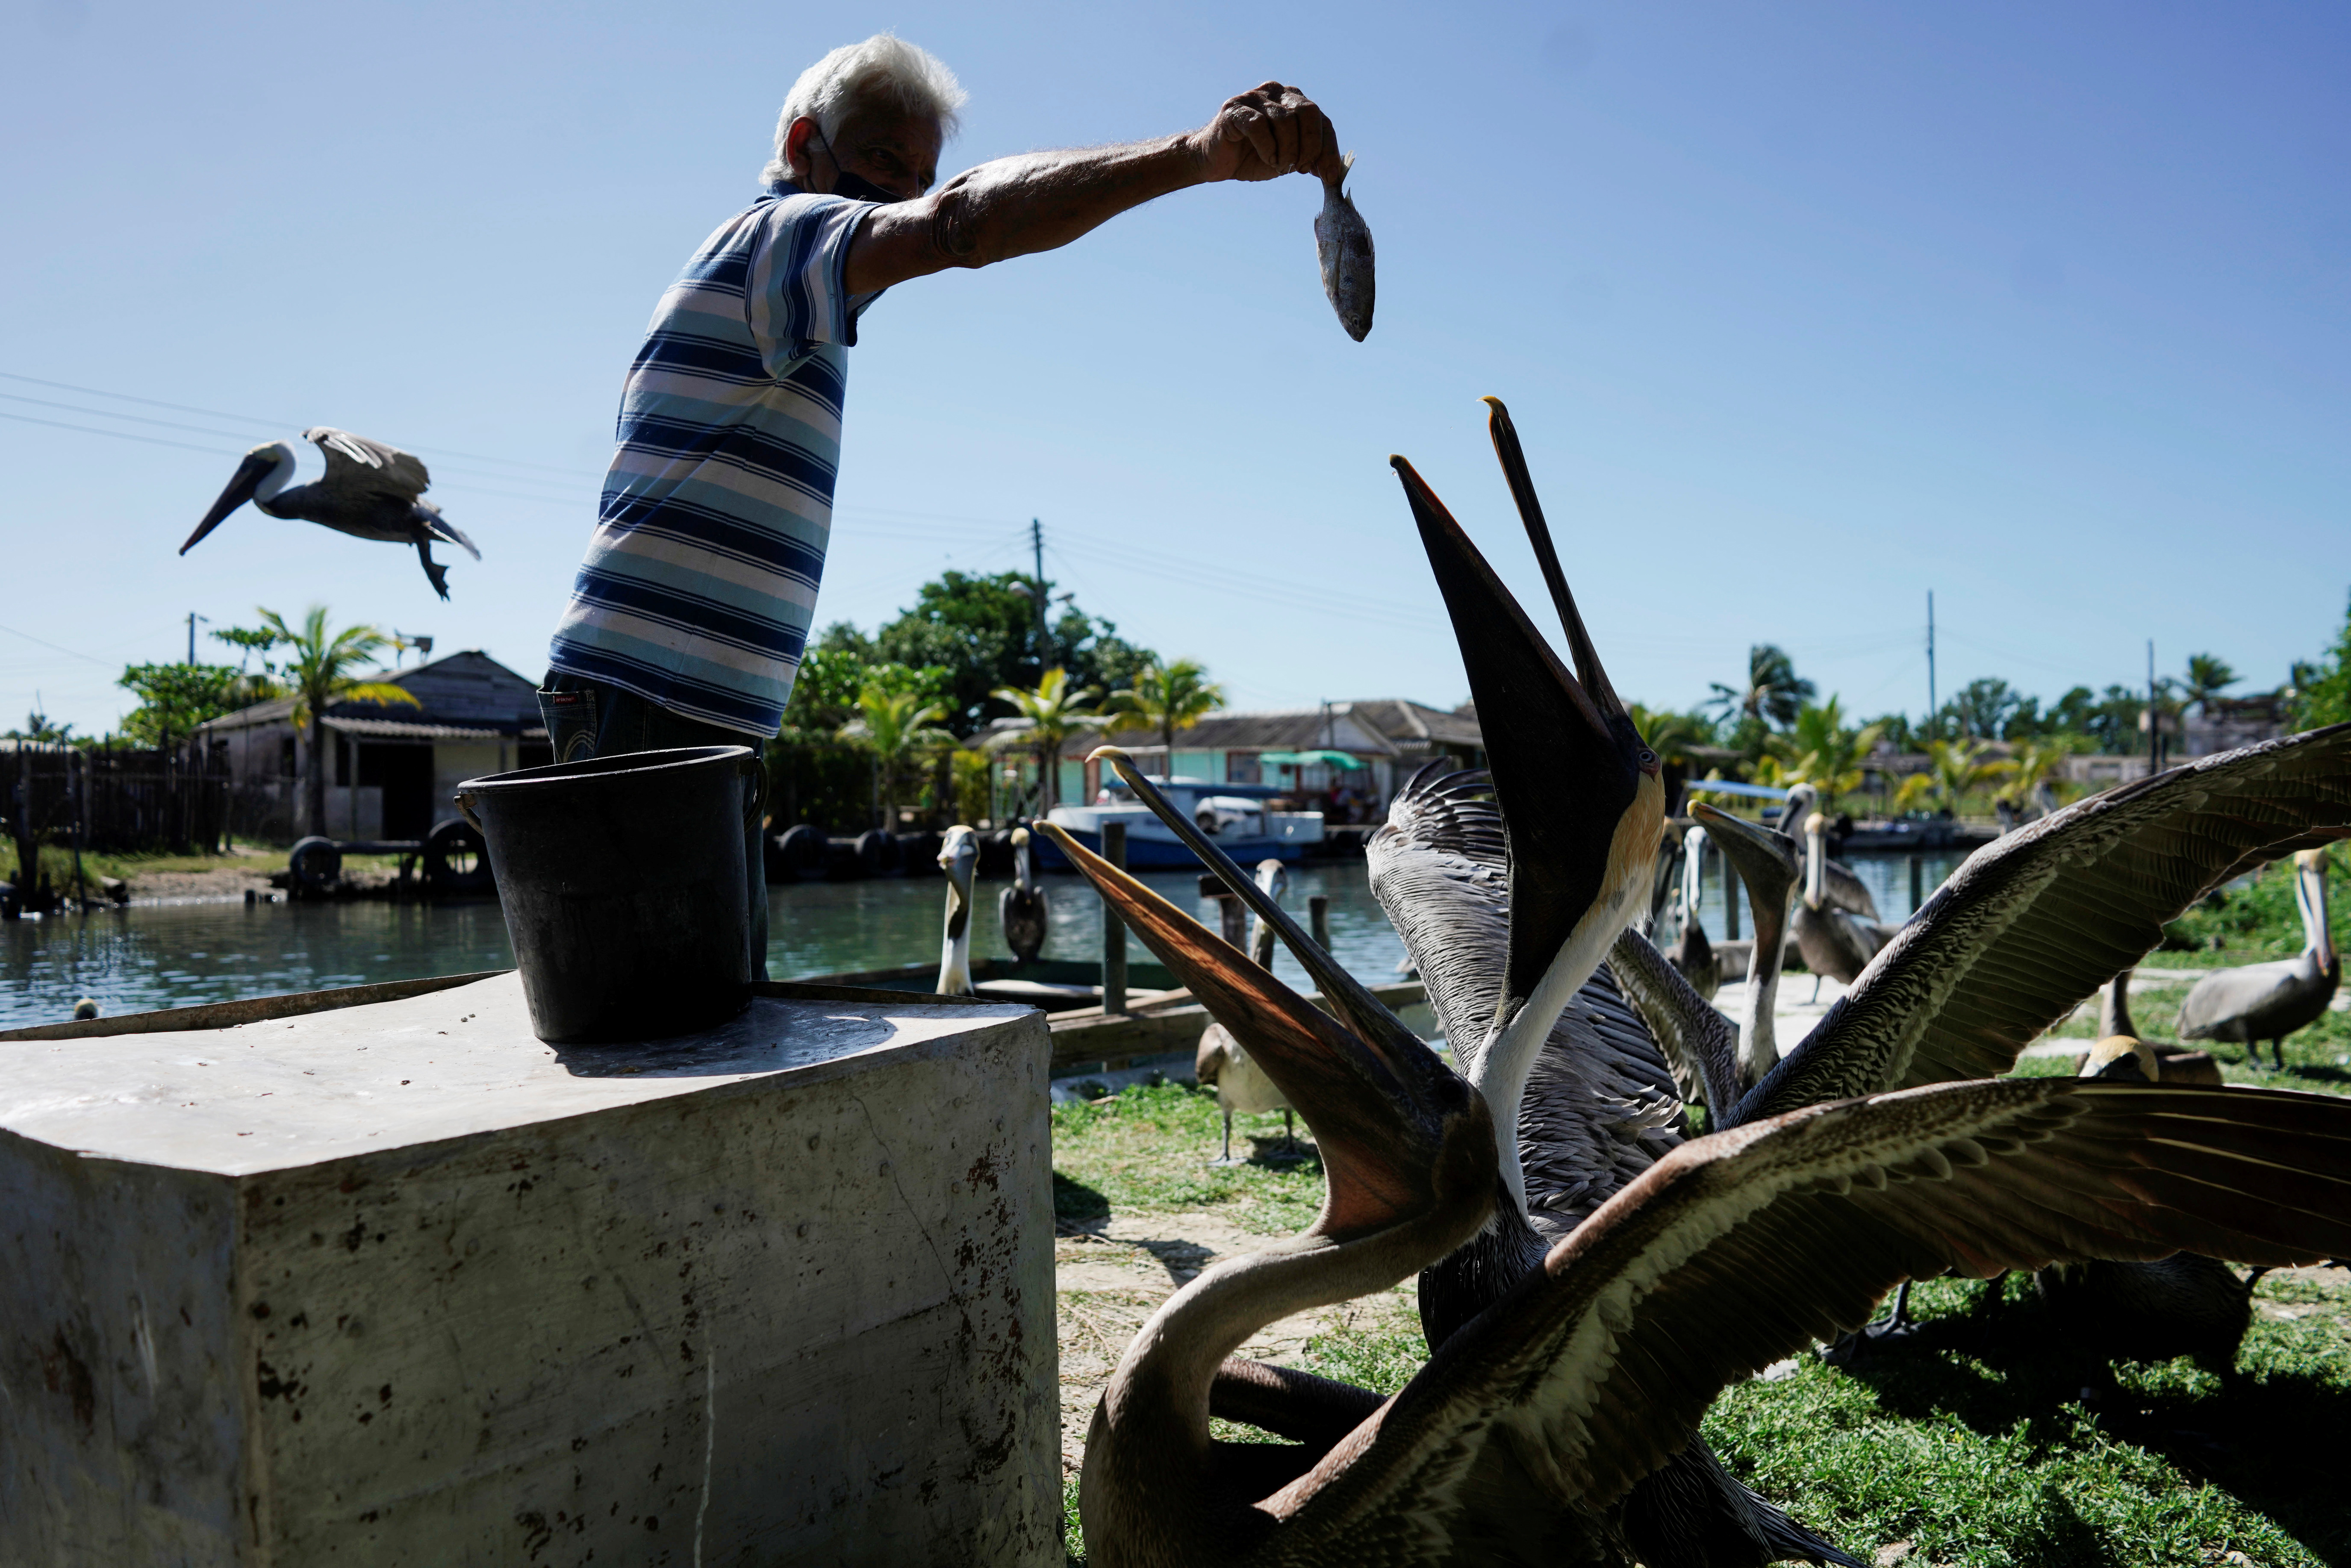 Leonardo Carrillo feeds pelicans in his garden in Guanimar, Cuba